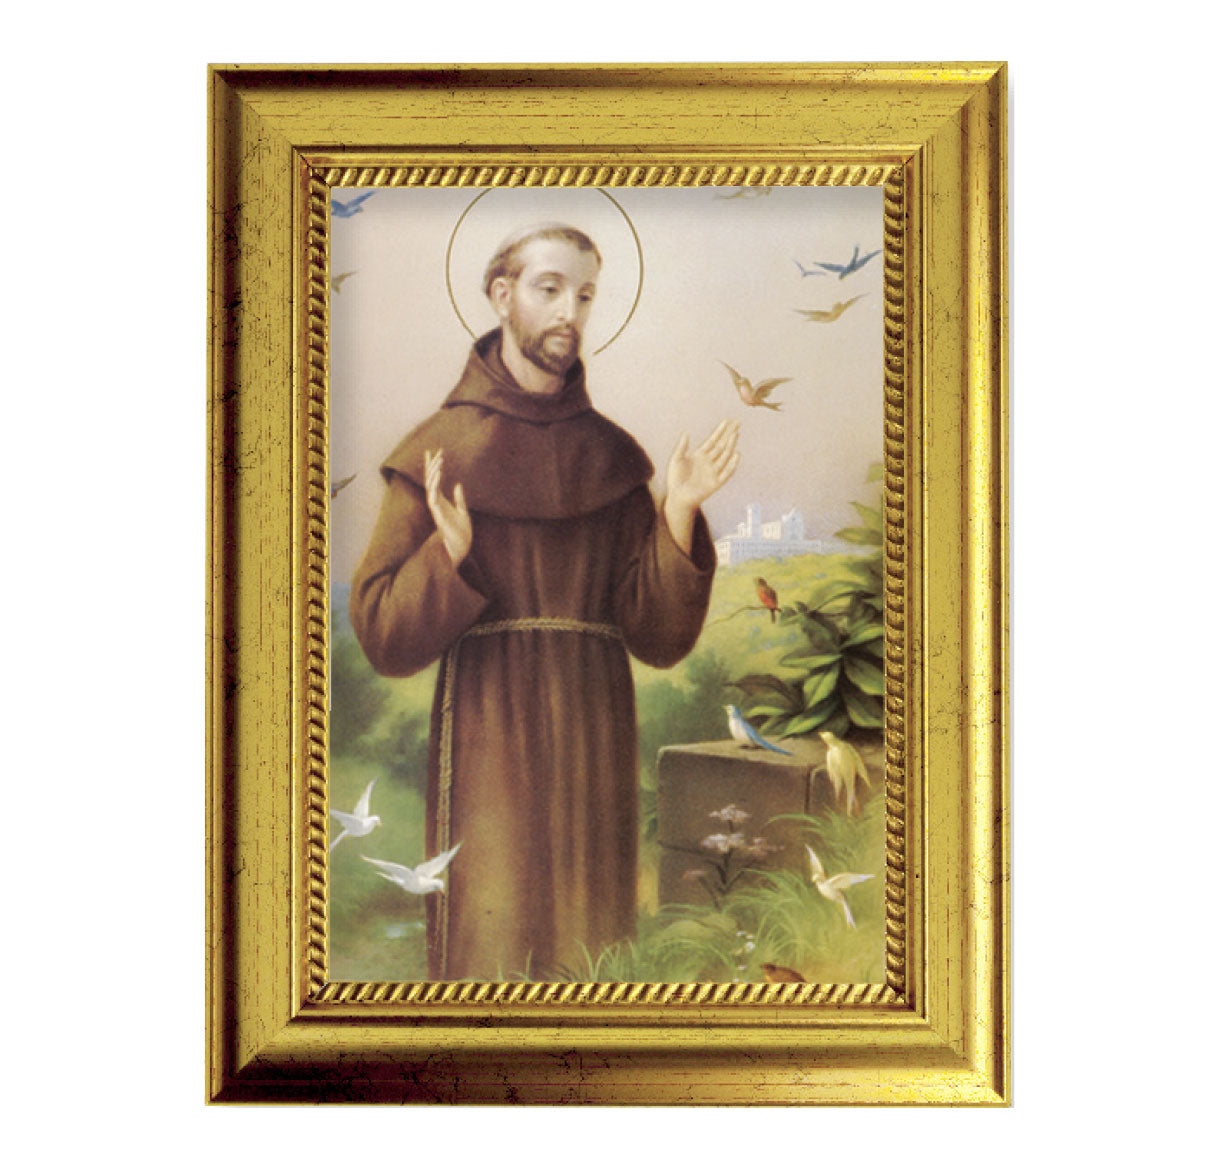 St. Francis Gold-Leaf Framed Art